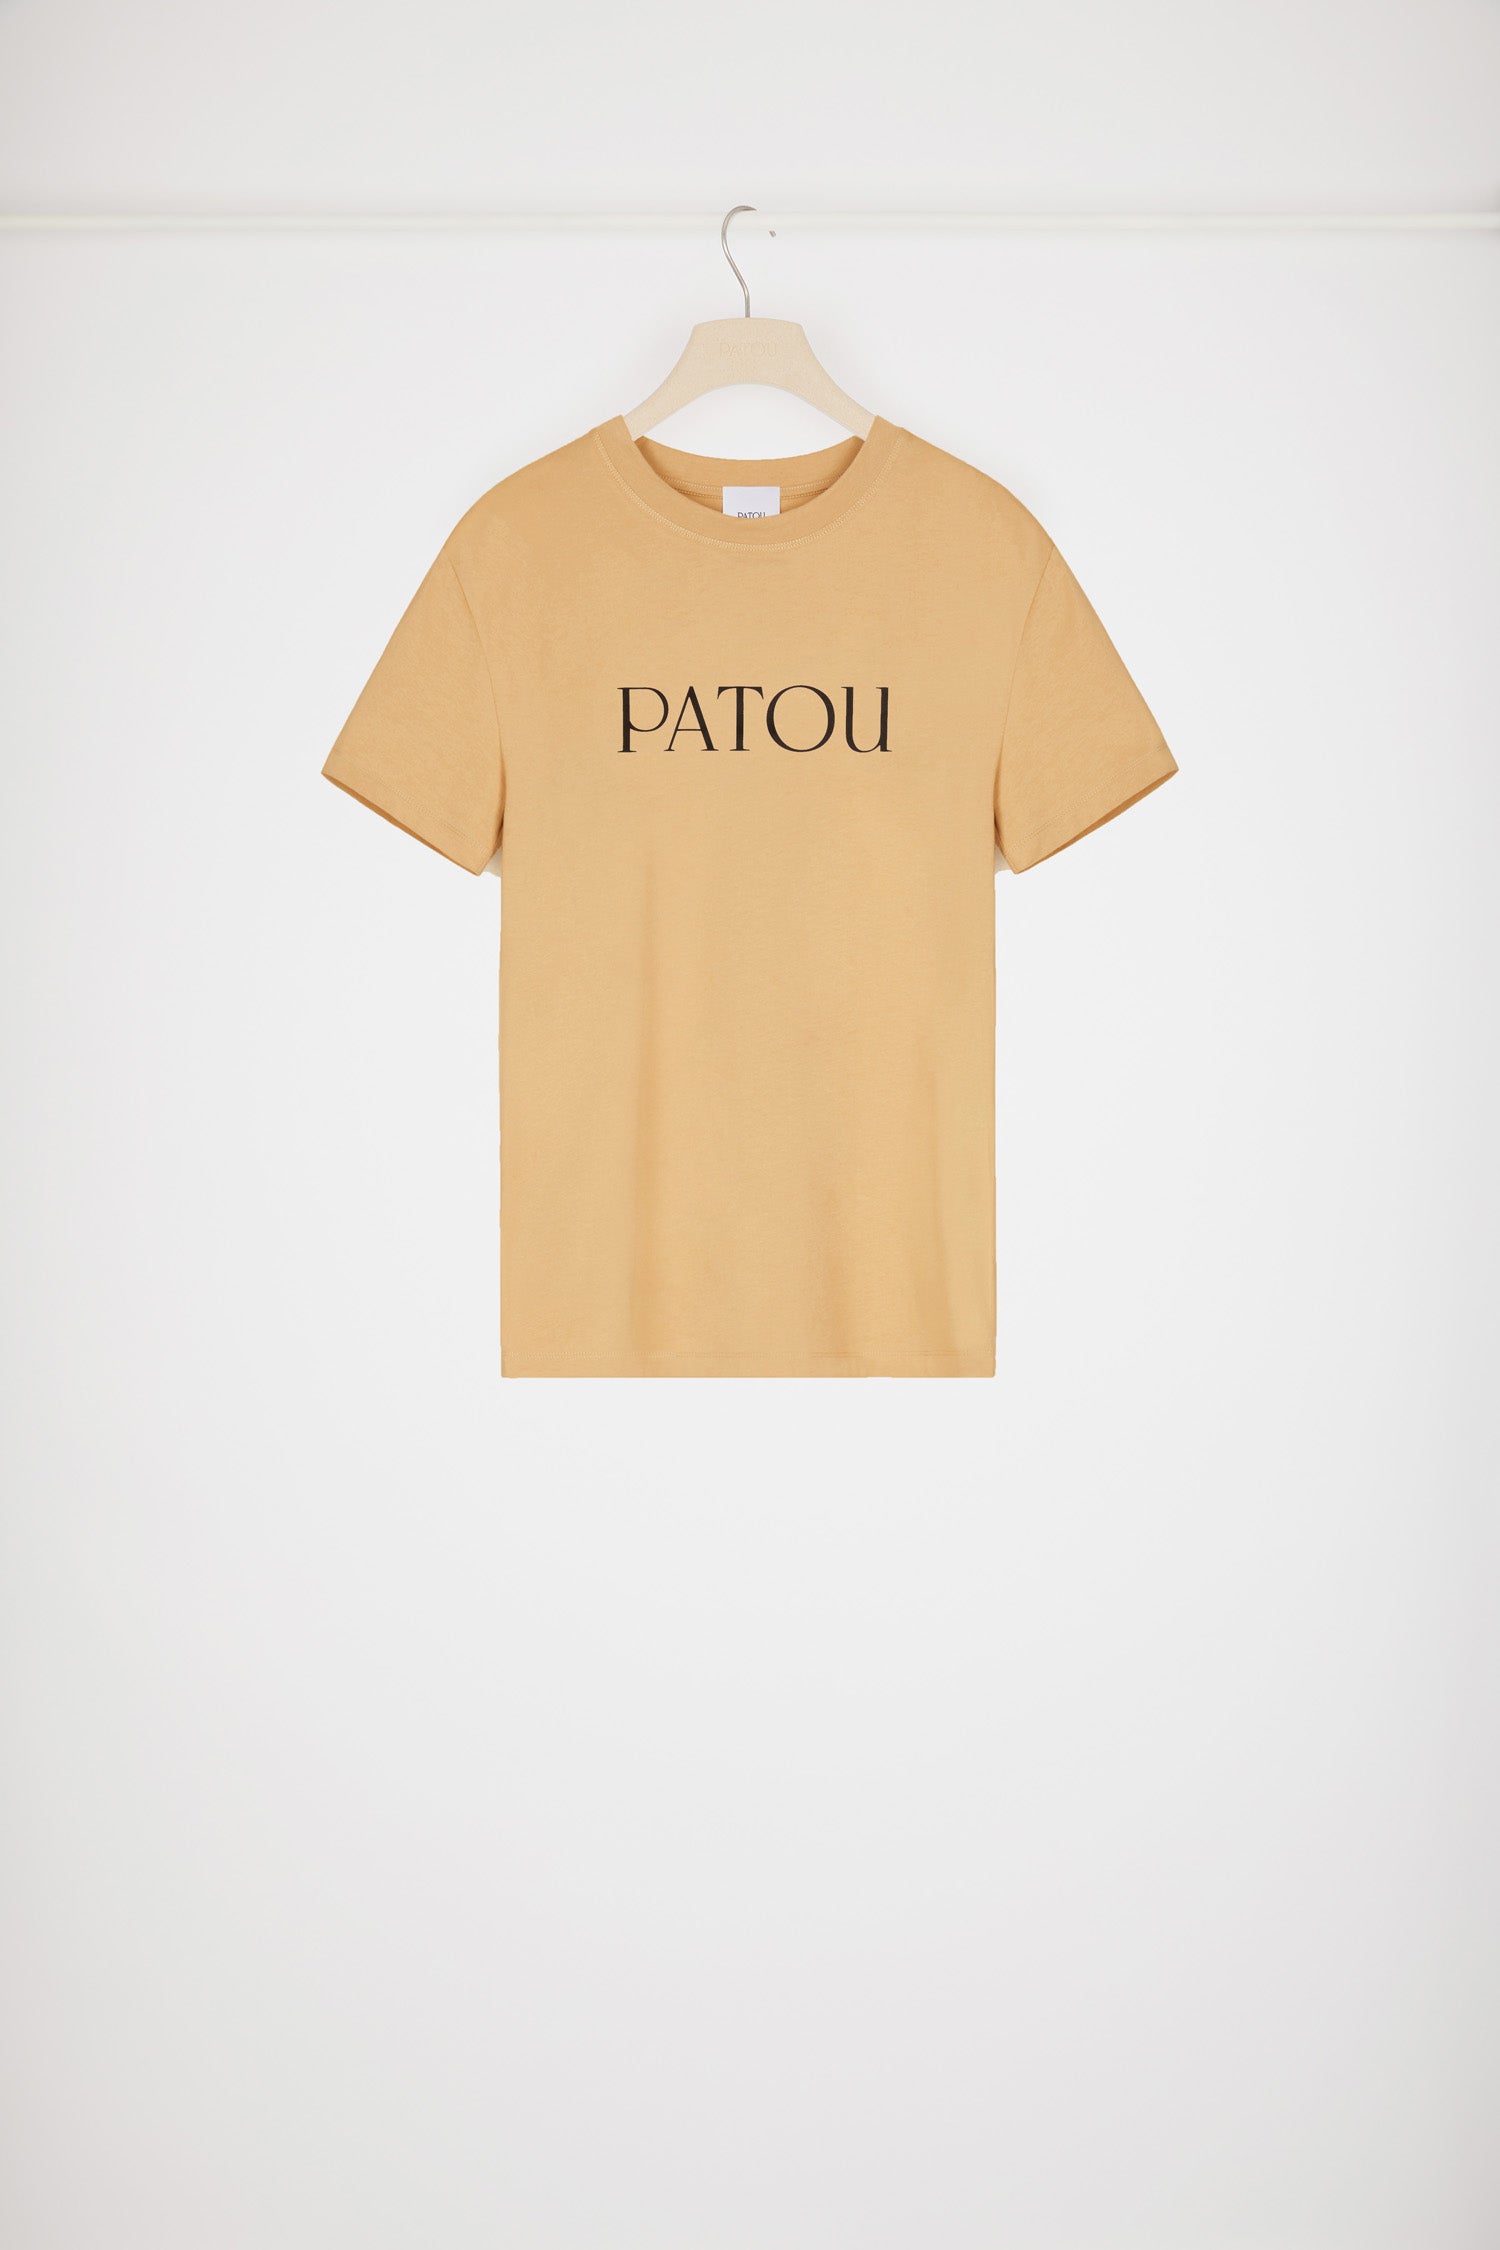 新品 PATOU オーガニックコットン パトゥロゴTシャツ